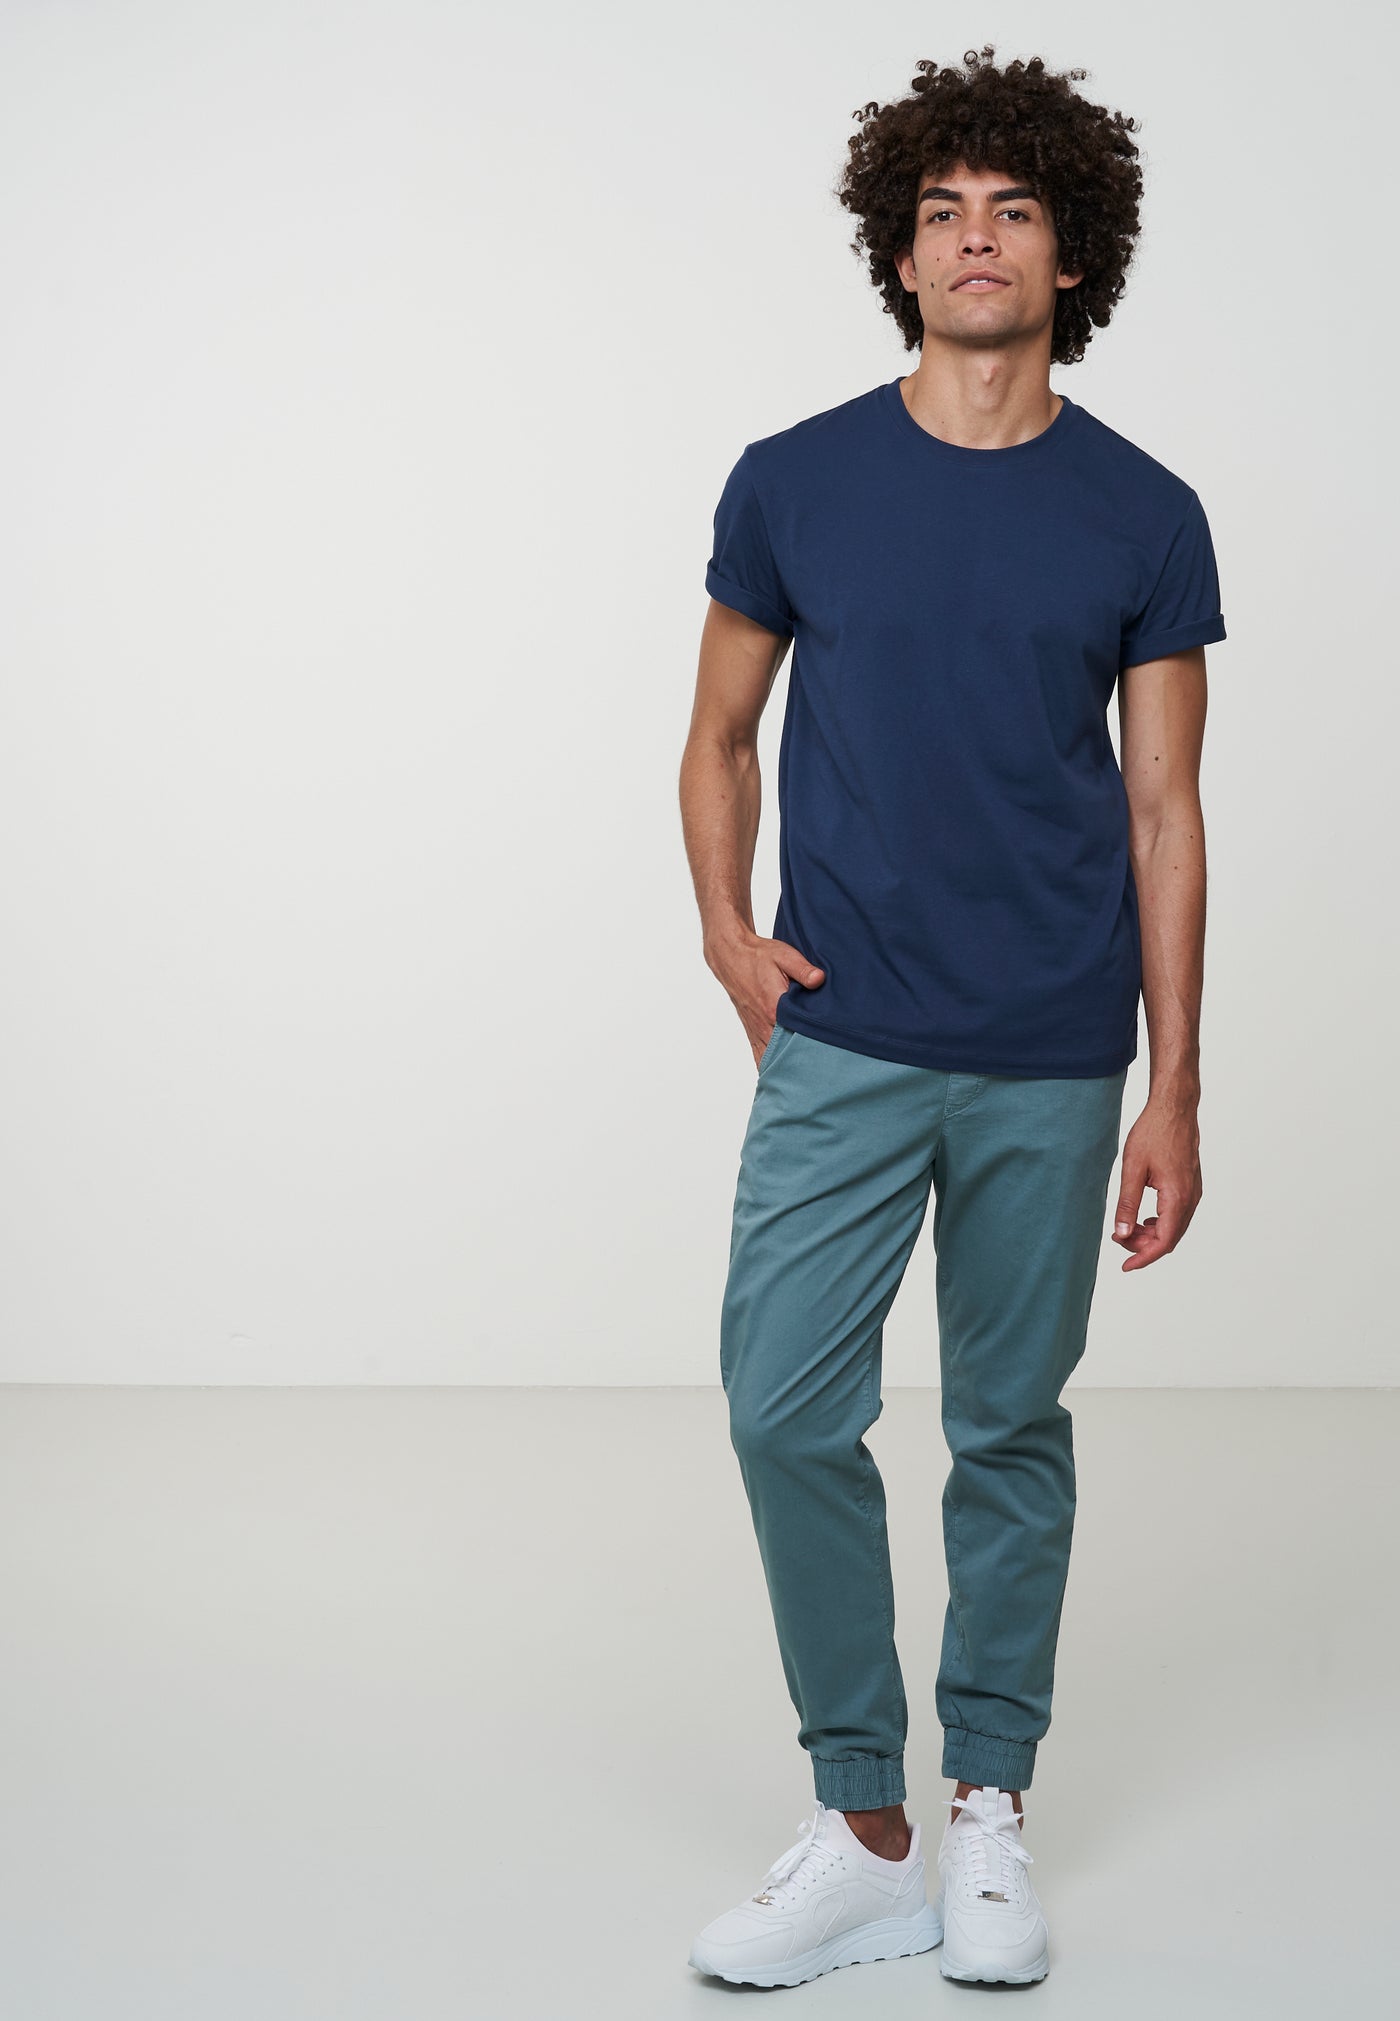 T-Shirt Agave Navy von Recolution. Das Shirt ist blau und aus Bio-Baumwolle. Du belommst es im Onlineshop von green.in.pieces.